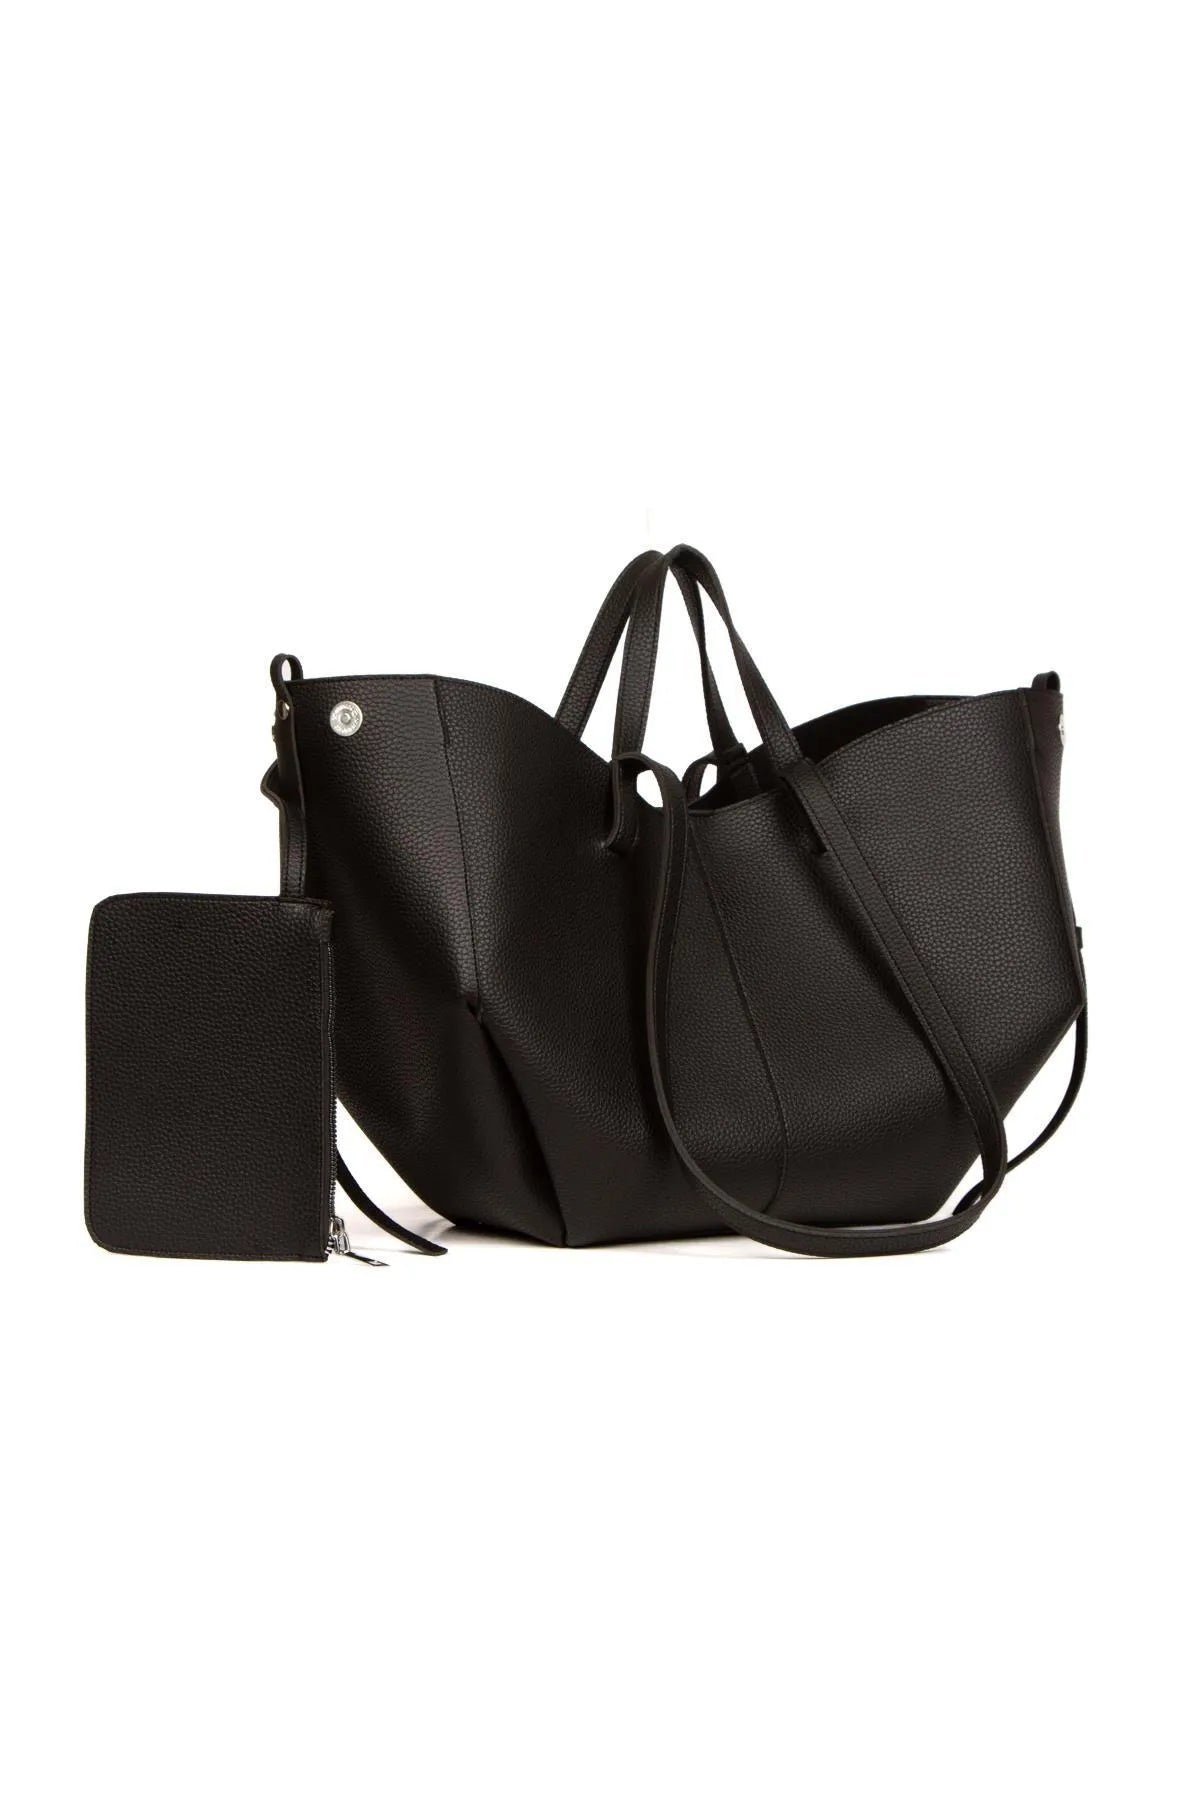 Black Vegan Leather Hand and Shoulder Bag